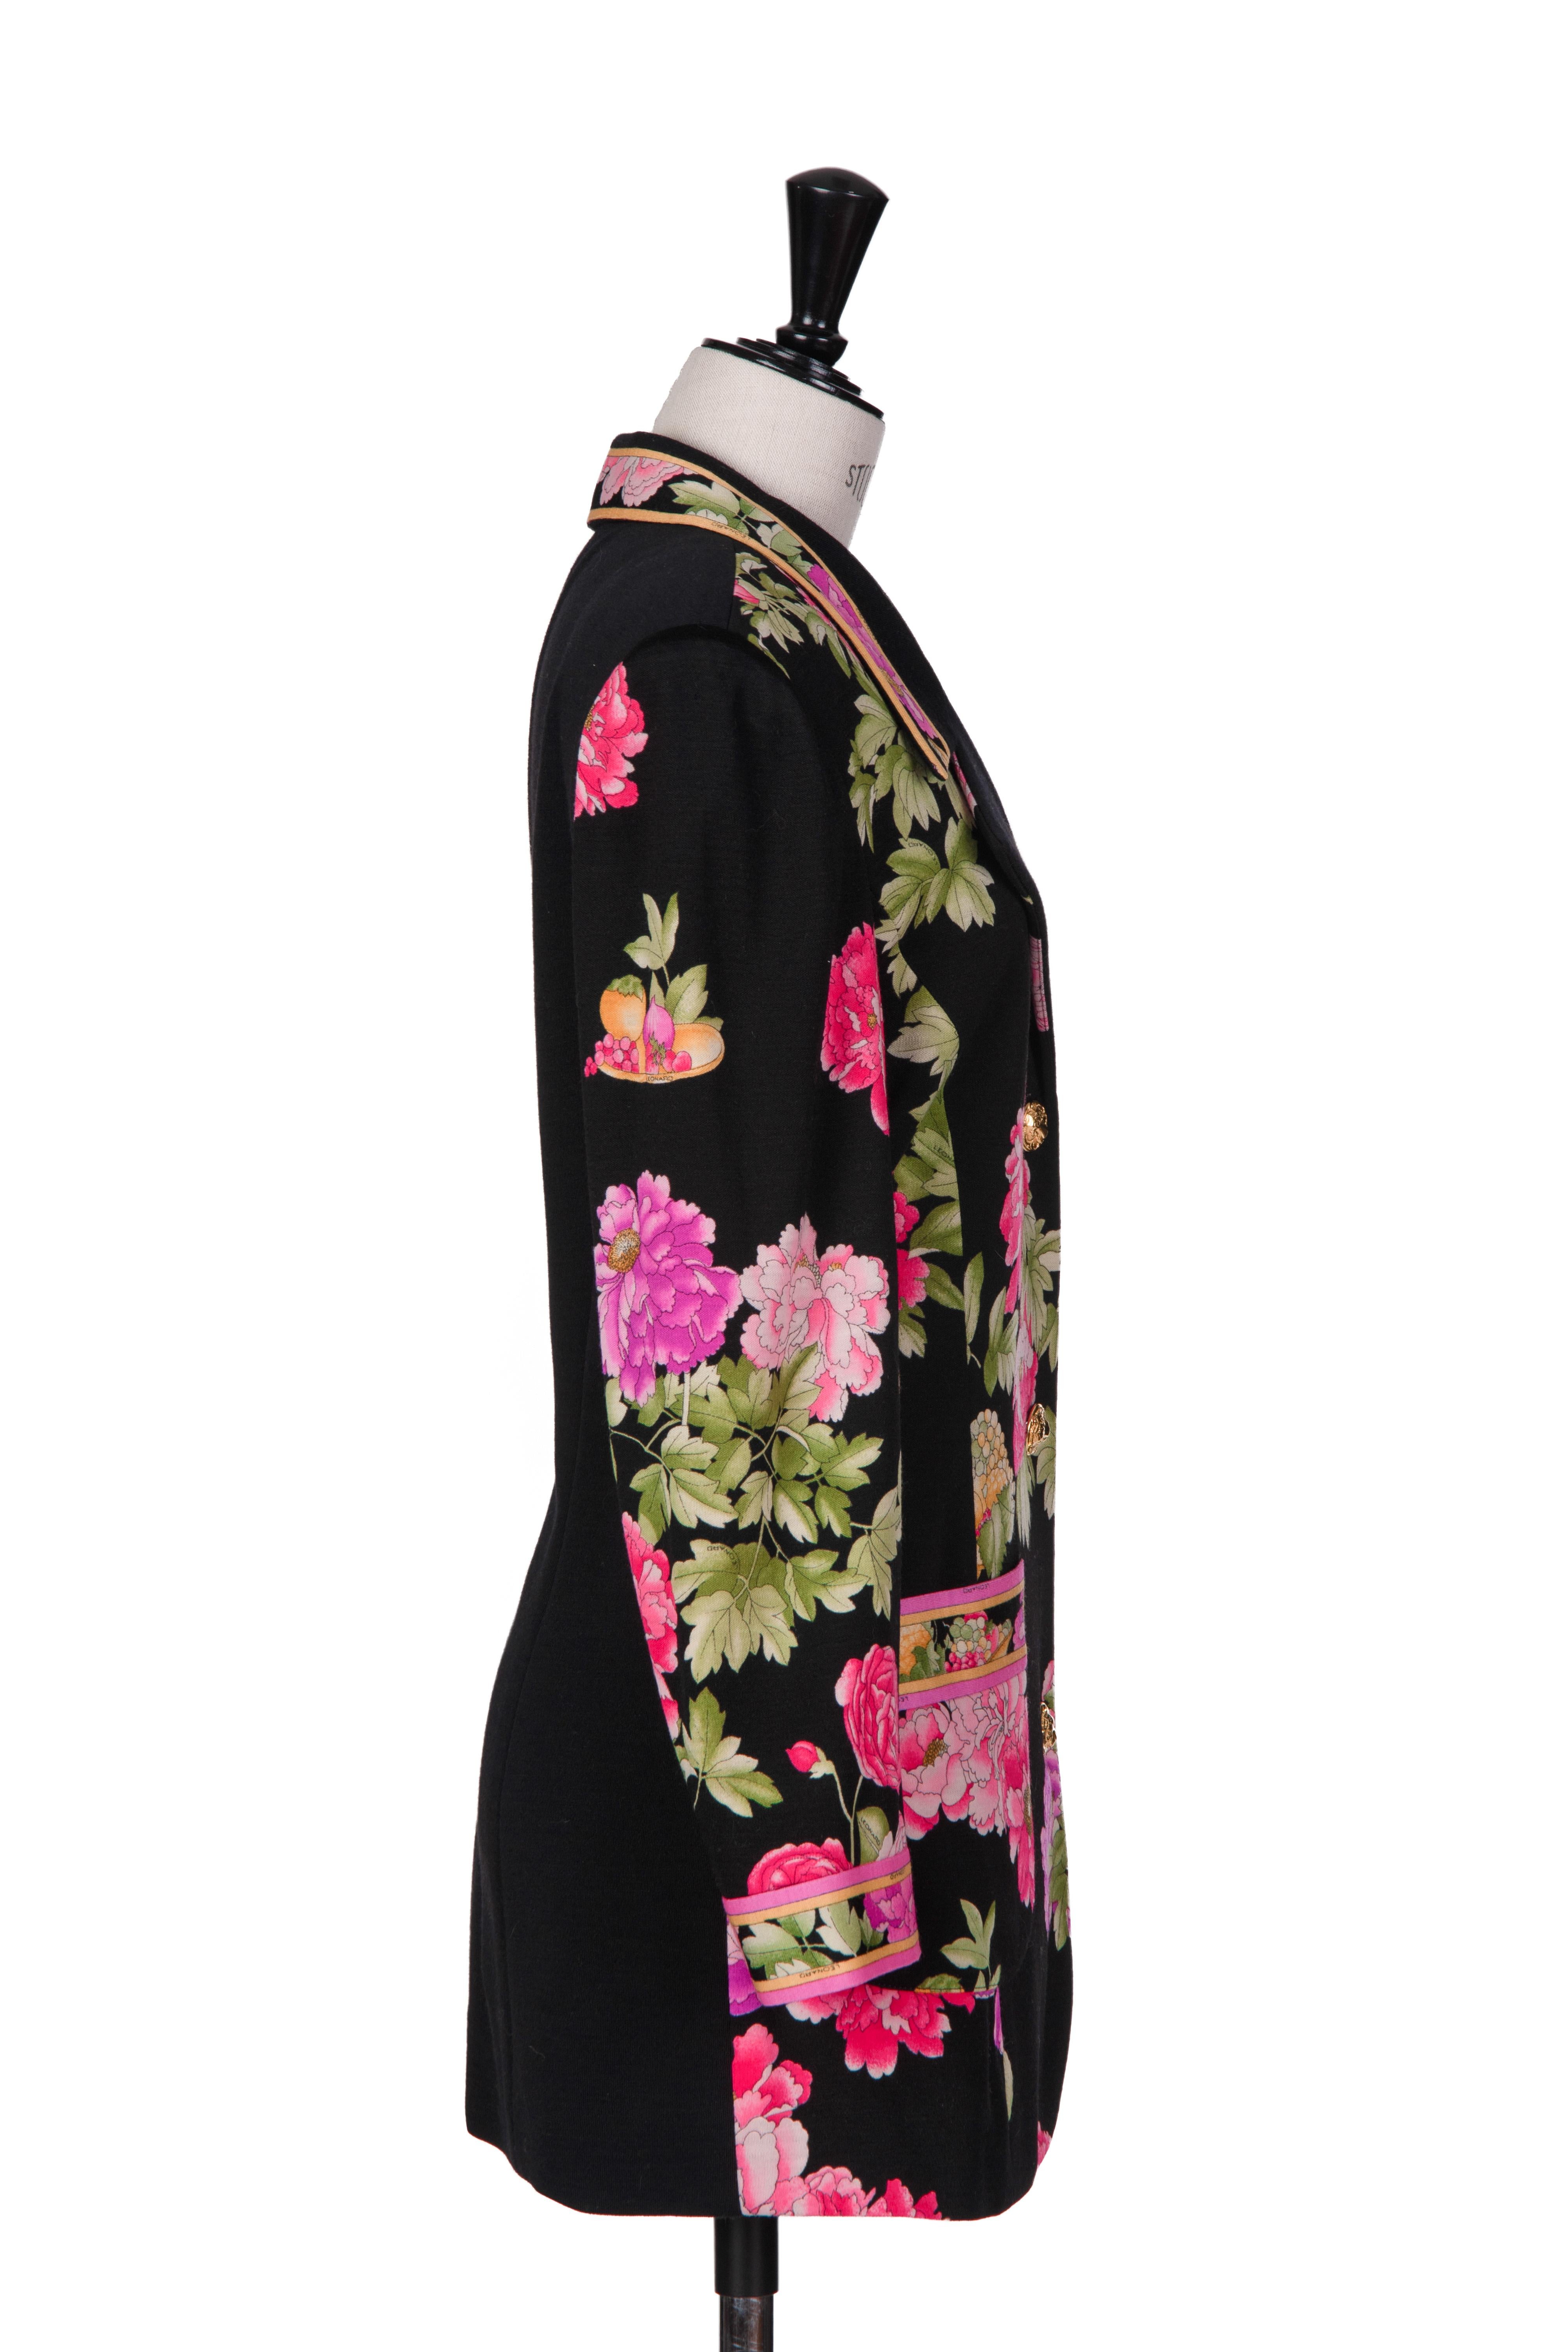 Noir LEONARD PARIS - Veste en maille de laine noire, rose et verte avec imprimé floral de pivoine, années 1990 en vente